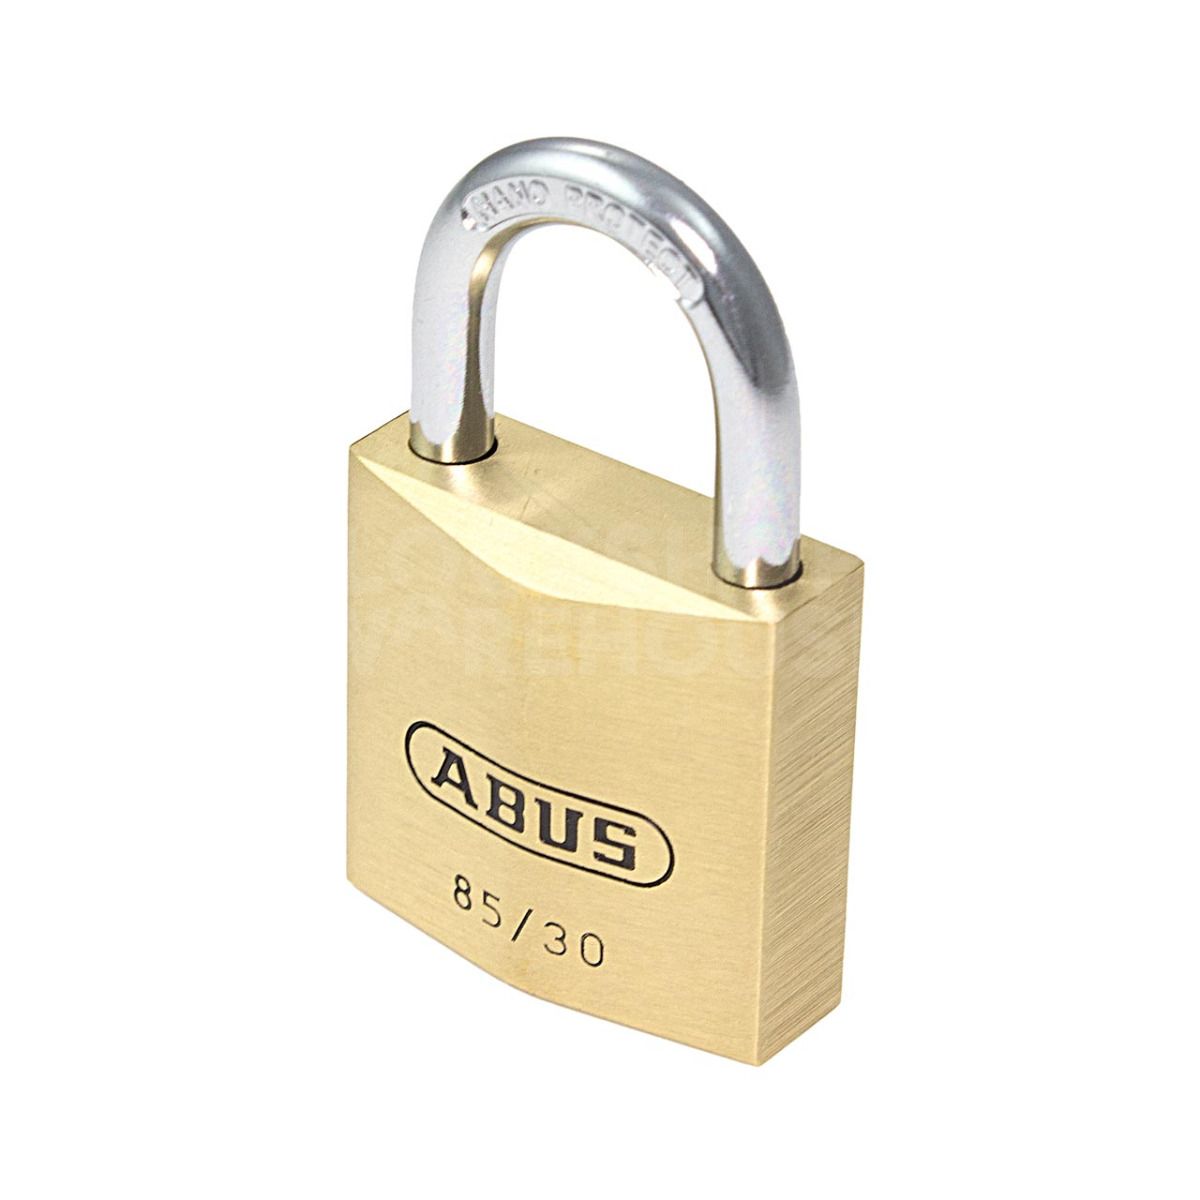 ABUS 85/30 Brass Padlock